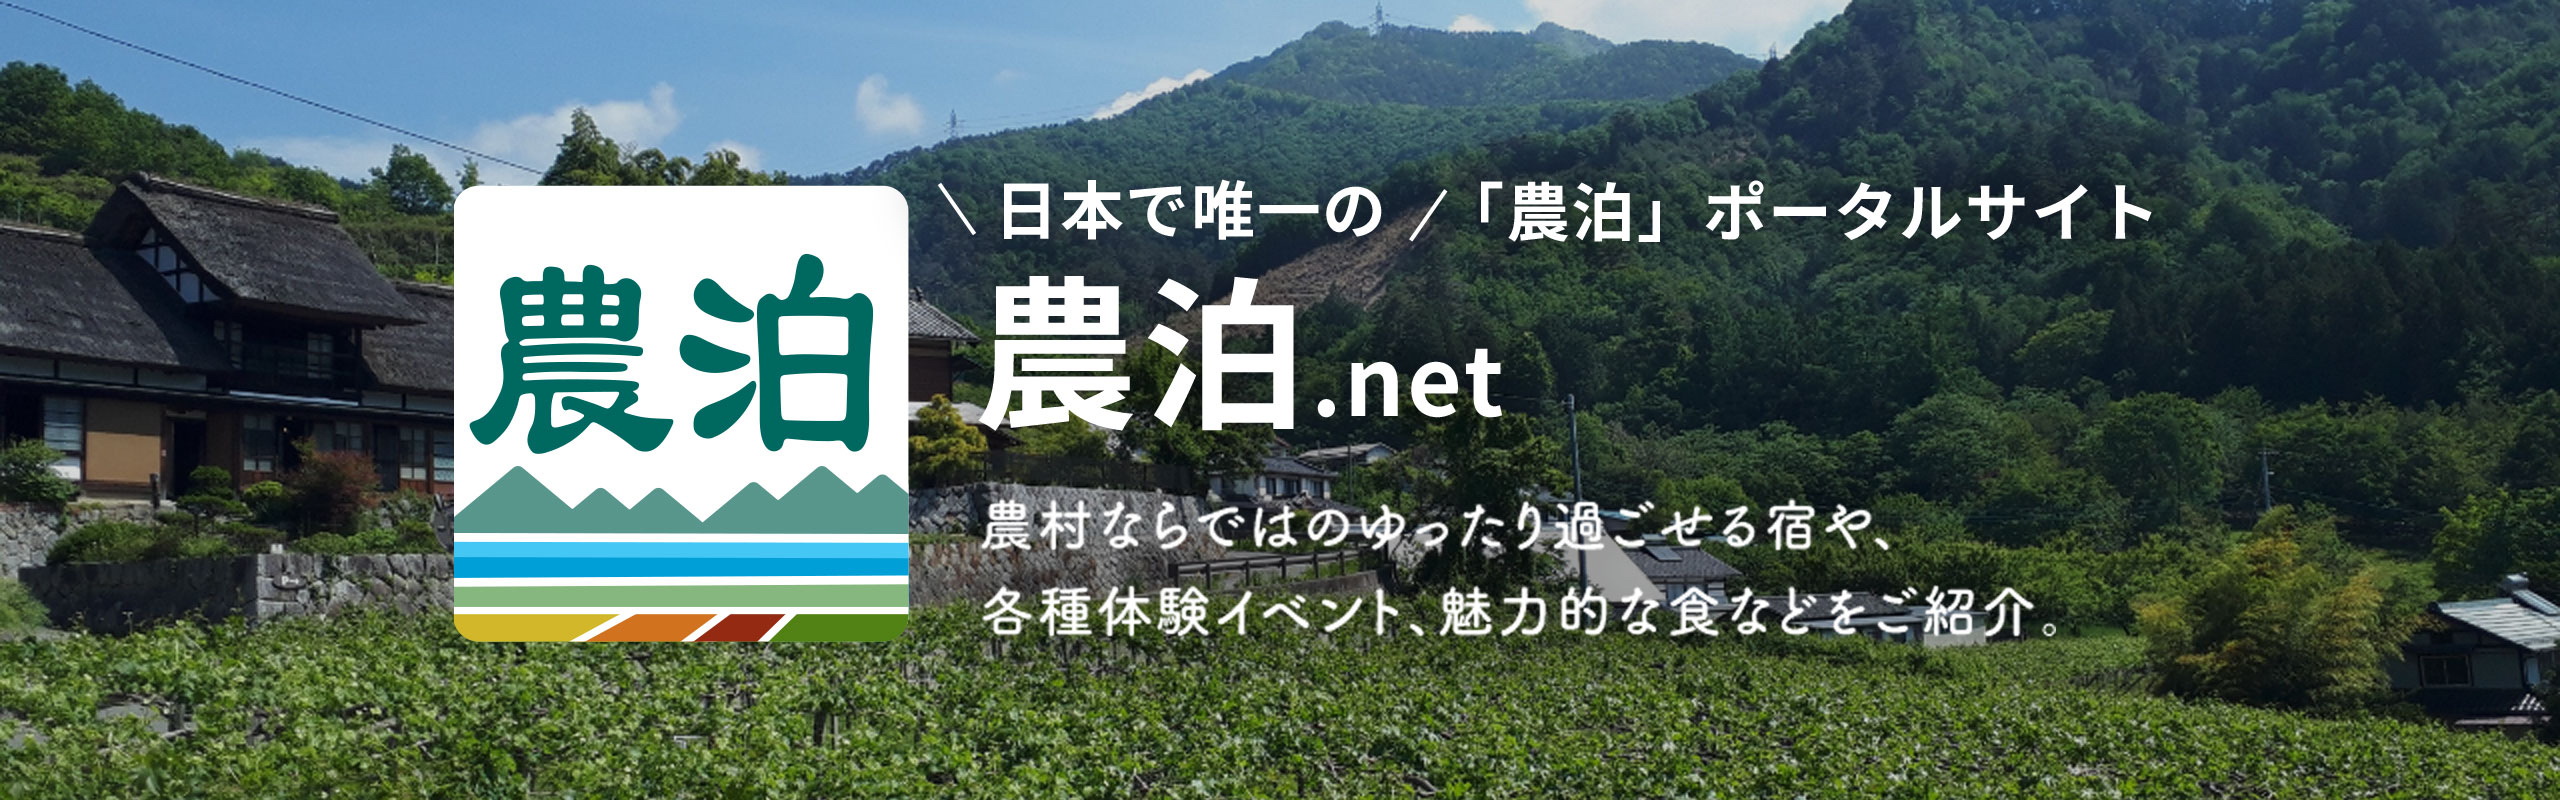 日本で唯一の「農泊」ポータルサイト 農泊.net 農村ならではのゆったり過ごせる宿屋、各種体験イベント、魅力的な食などをご紹介。